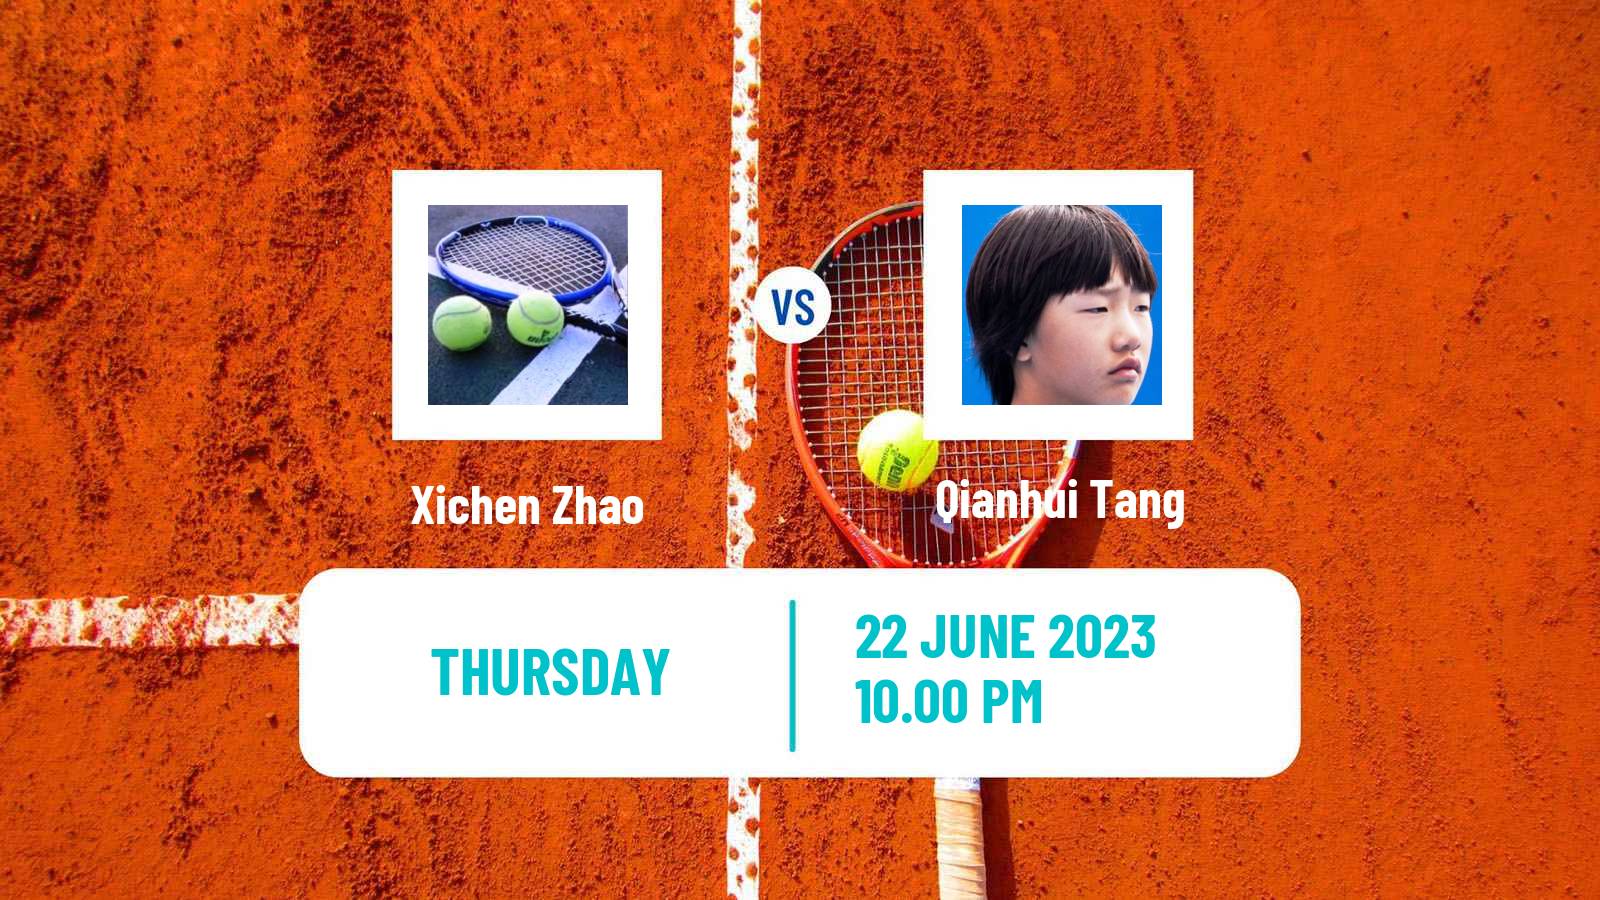 Tennis ITF W15 Tianjin 2 Women Xichen Zhao - Qianhui Tang